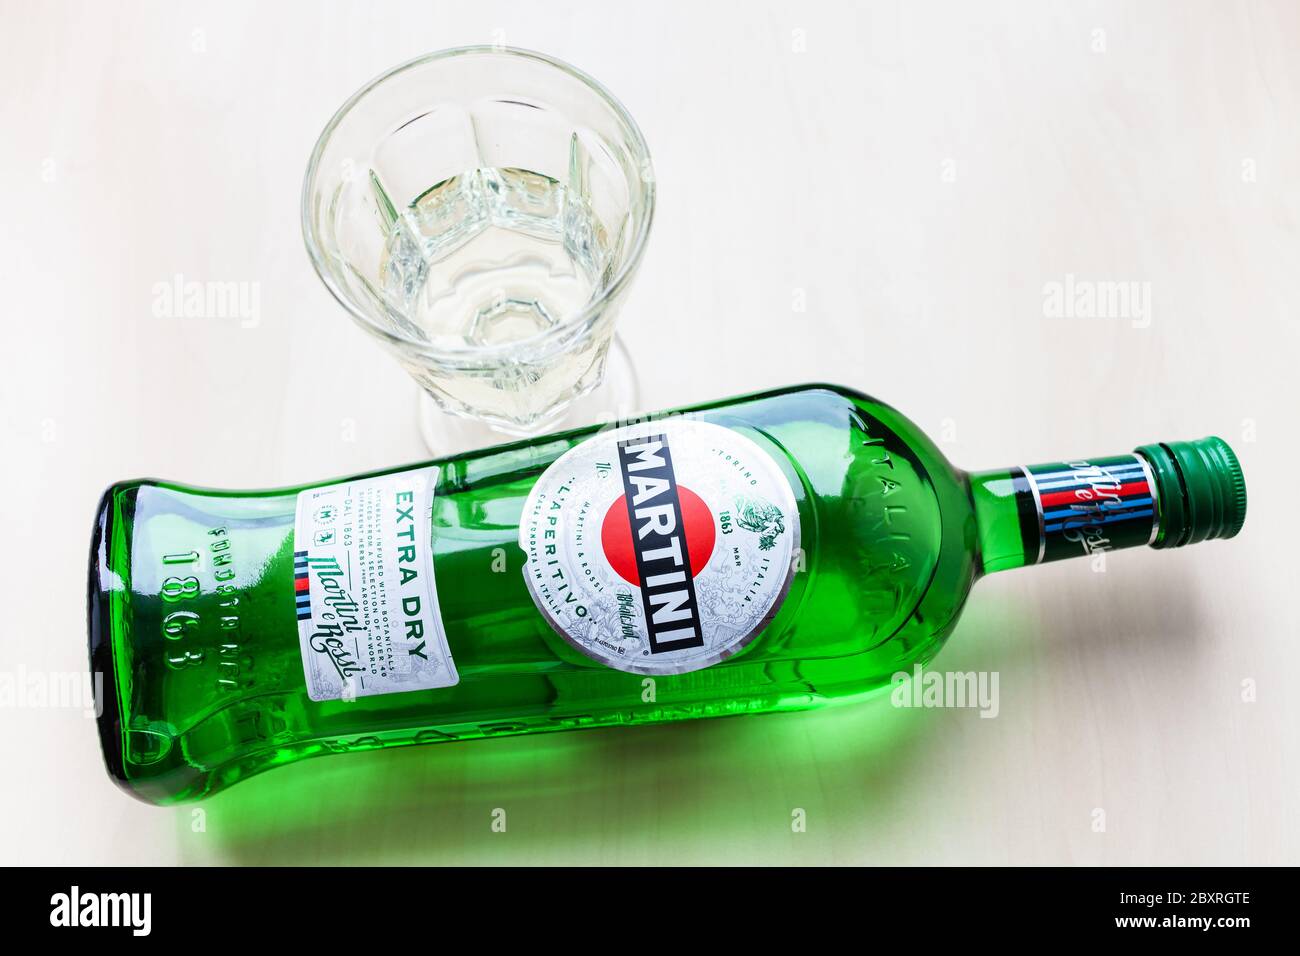 MOSCA, RUSSIA - 23 MAGGIO 2020: Vista dall'alto della bottiglia di Martini Extra Dry e del vetro sul tavolo marrone chiaro. Martini è il classico vermouth italiano Foto Stock